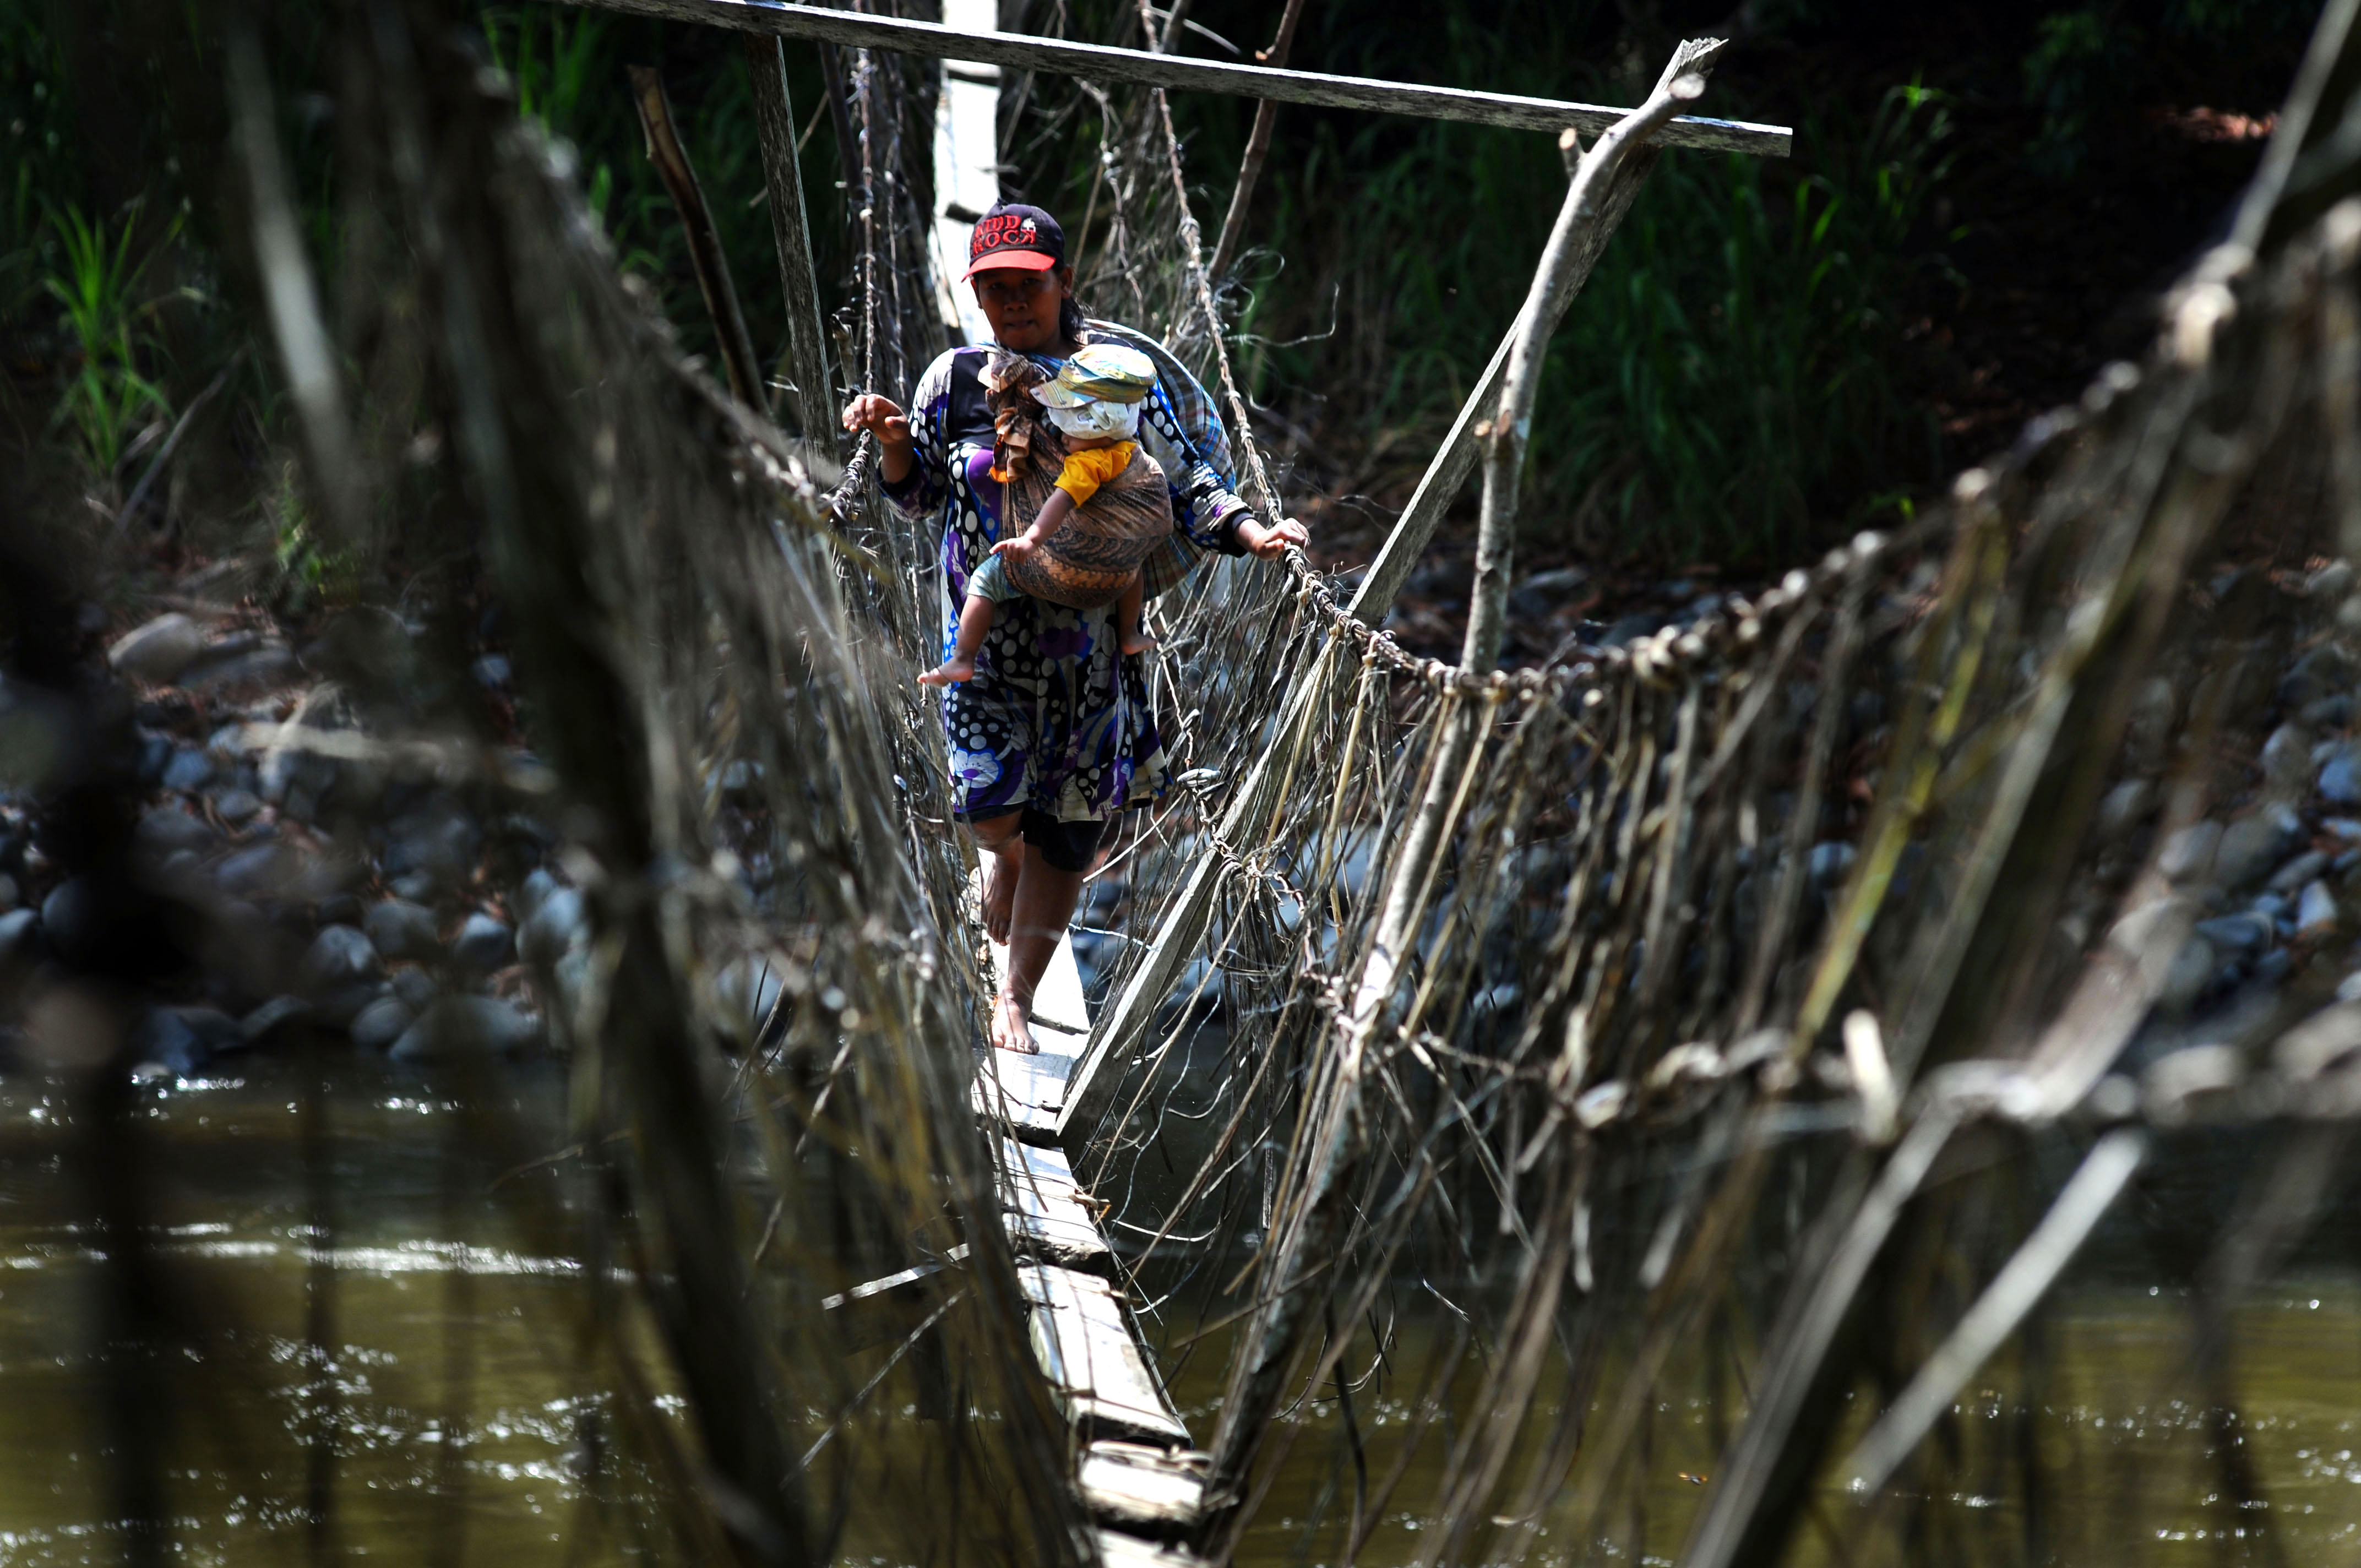 Seorang ibu sambil menggendong anaknya meniti jembatan darurat  di Desa Makujawa, Gimpu, Sigi, Sulawesi Tengah, Sabtu (7/11). Jembatan darurat yang panjangnya kurang lebih 300 meter itu satu-satunya akses untuk menuju dusun satu Wahi dan perkebunan masyarakat. ANTARA FOTO/Fiqman Sunandar.